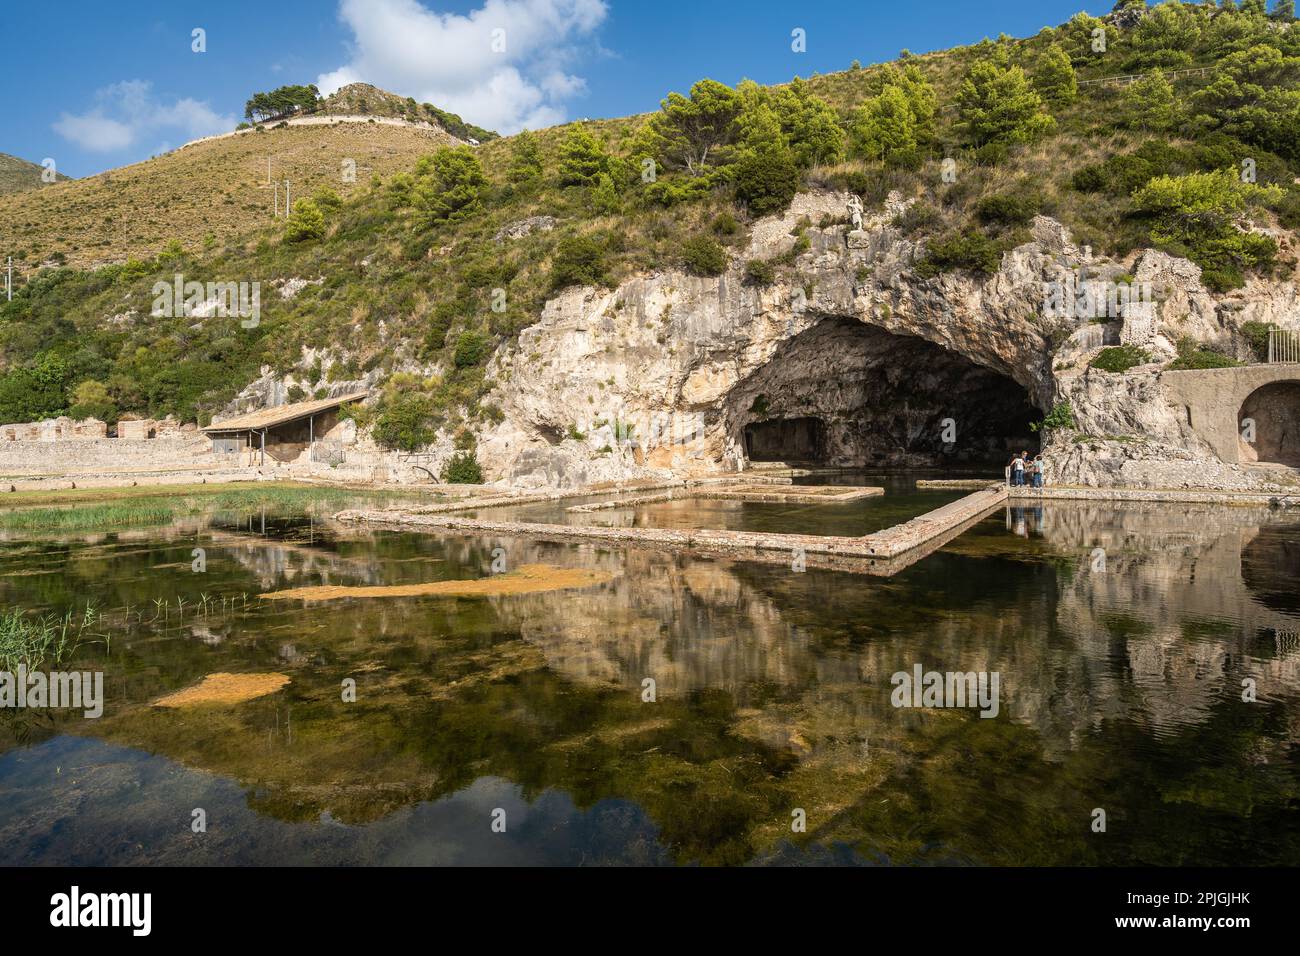 La grotta di Villa Tiberio a Sperlonga, i ruderi di un'antica villa romana, Lazio, Italia Foto Stock